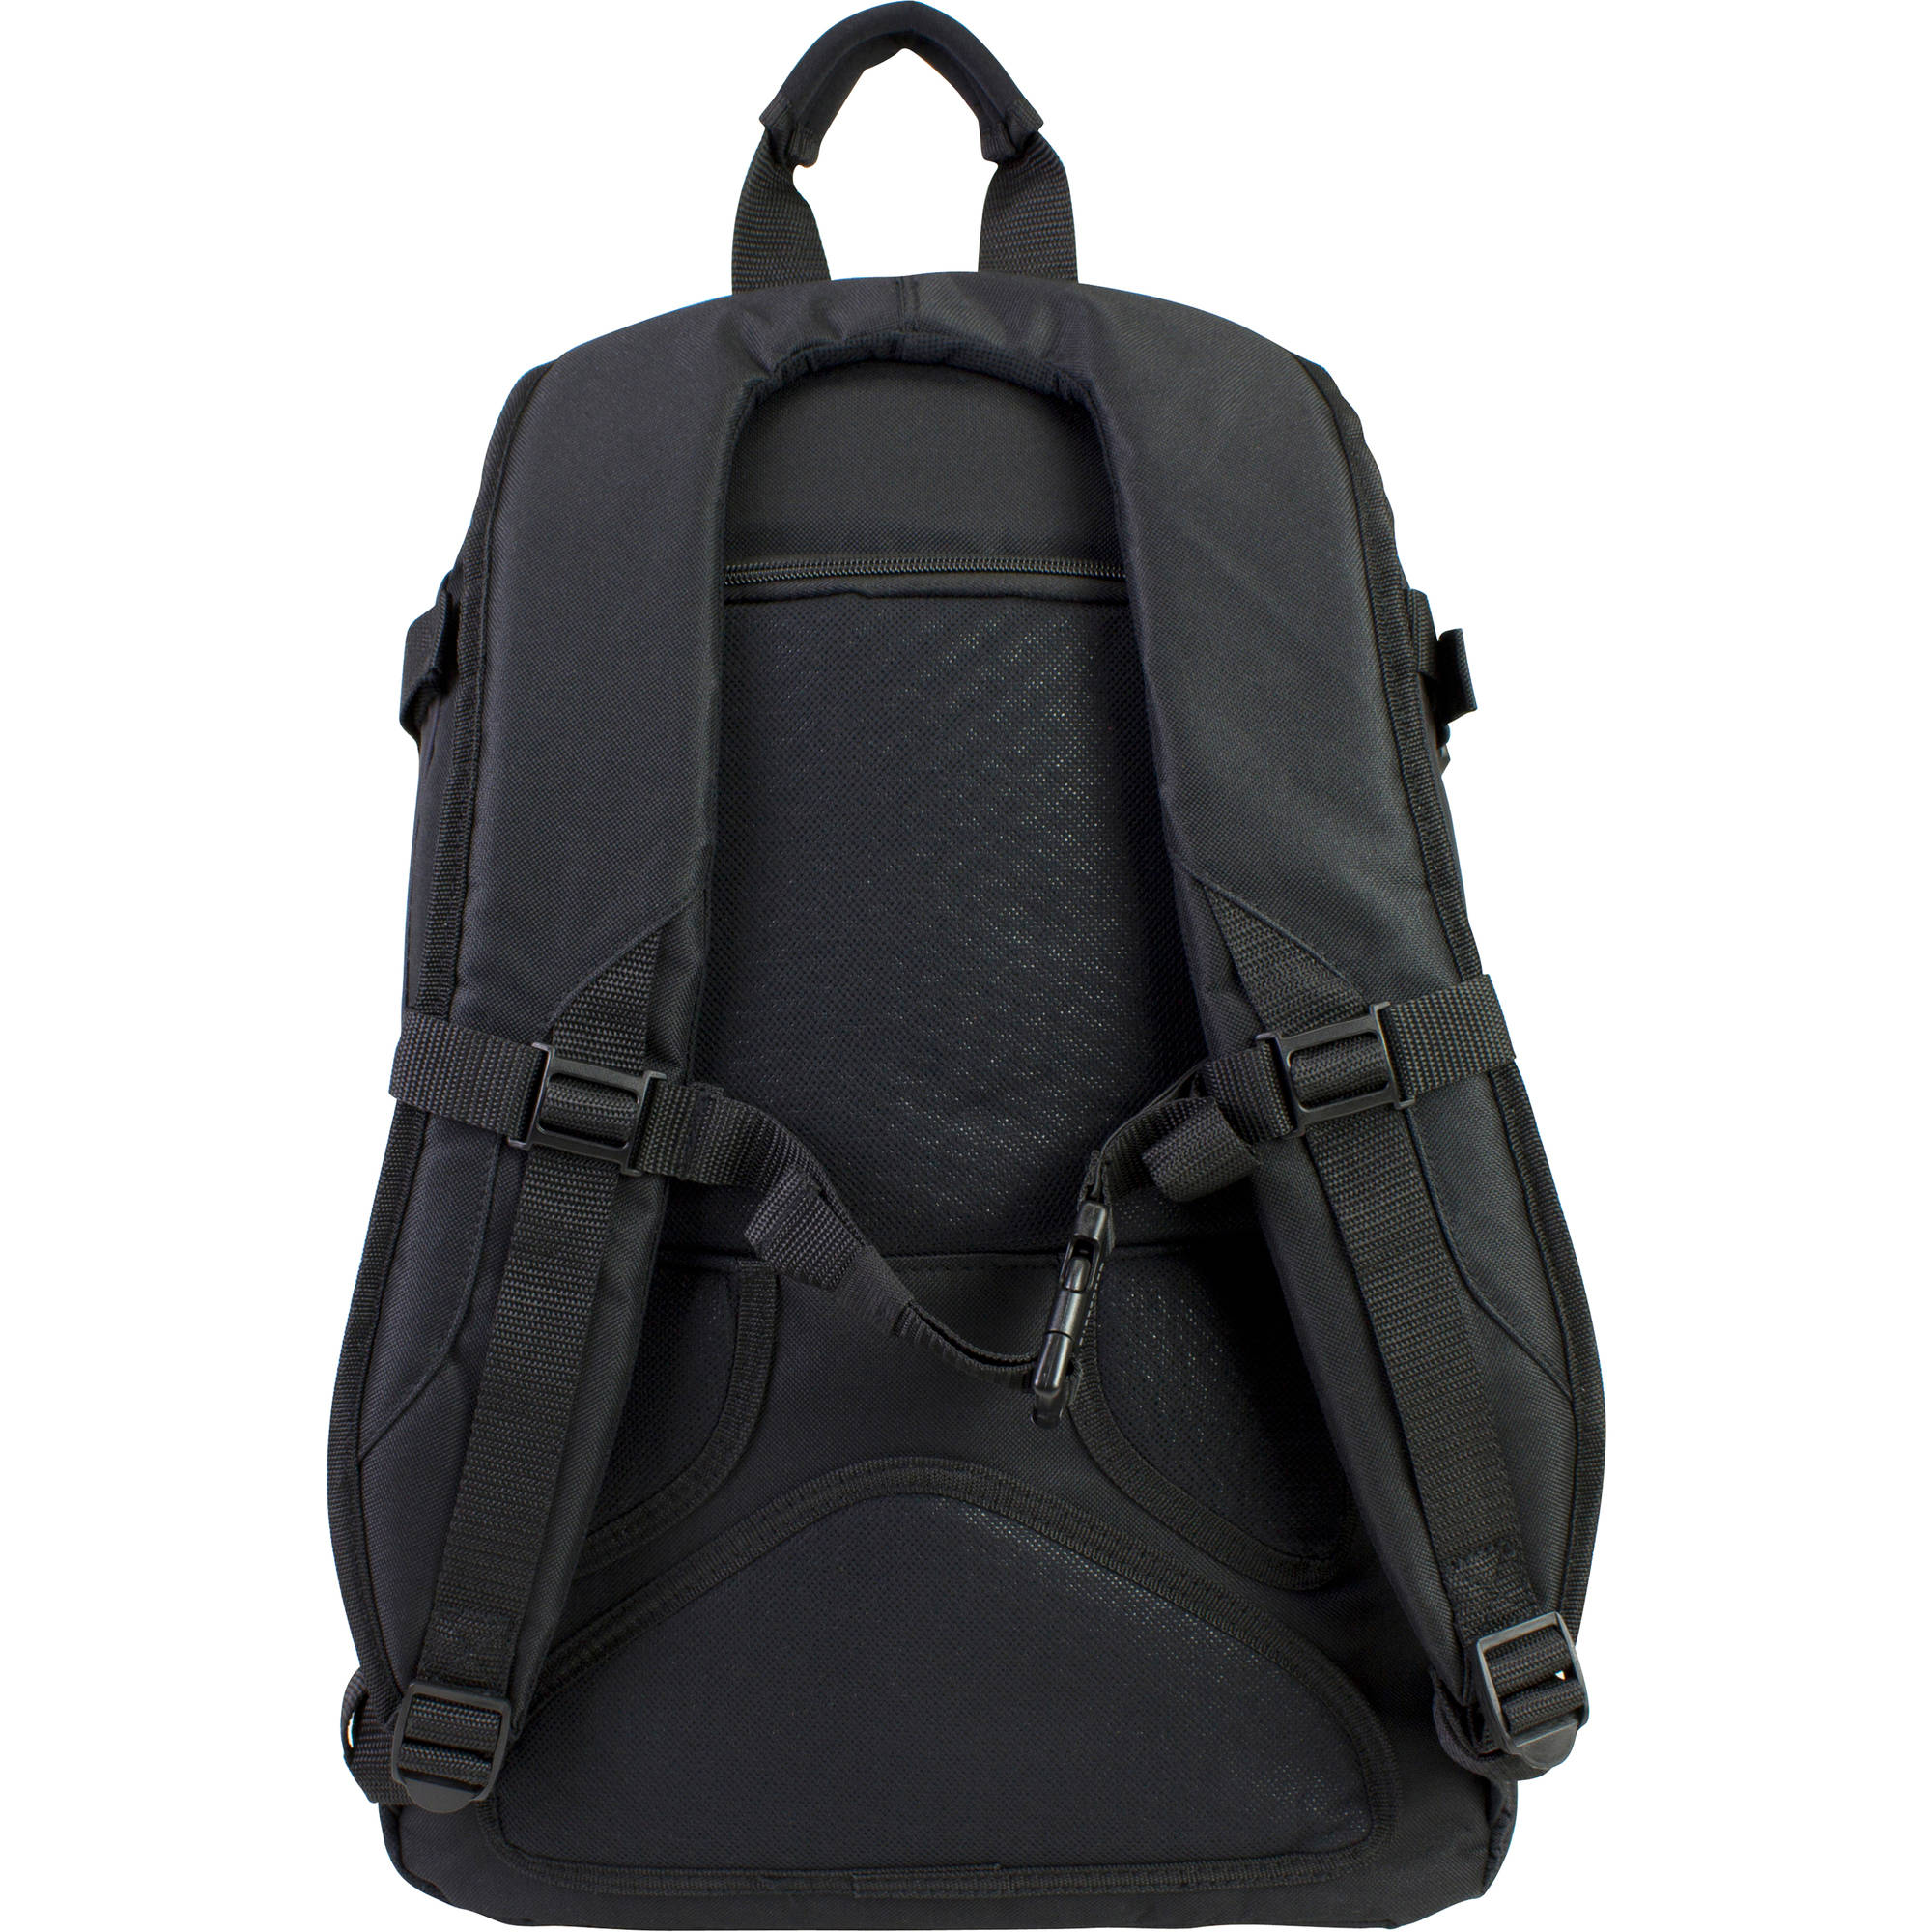 Laptop Backpack with Adjustable Padded Shoulder Straps - image 4 of 8